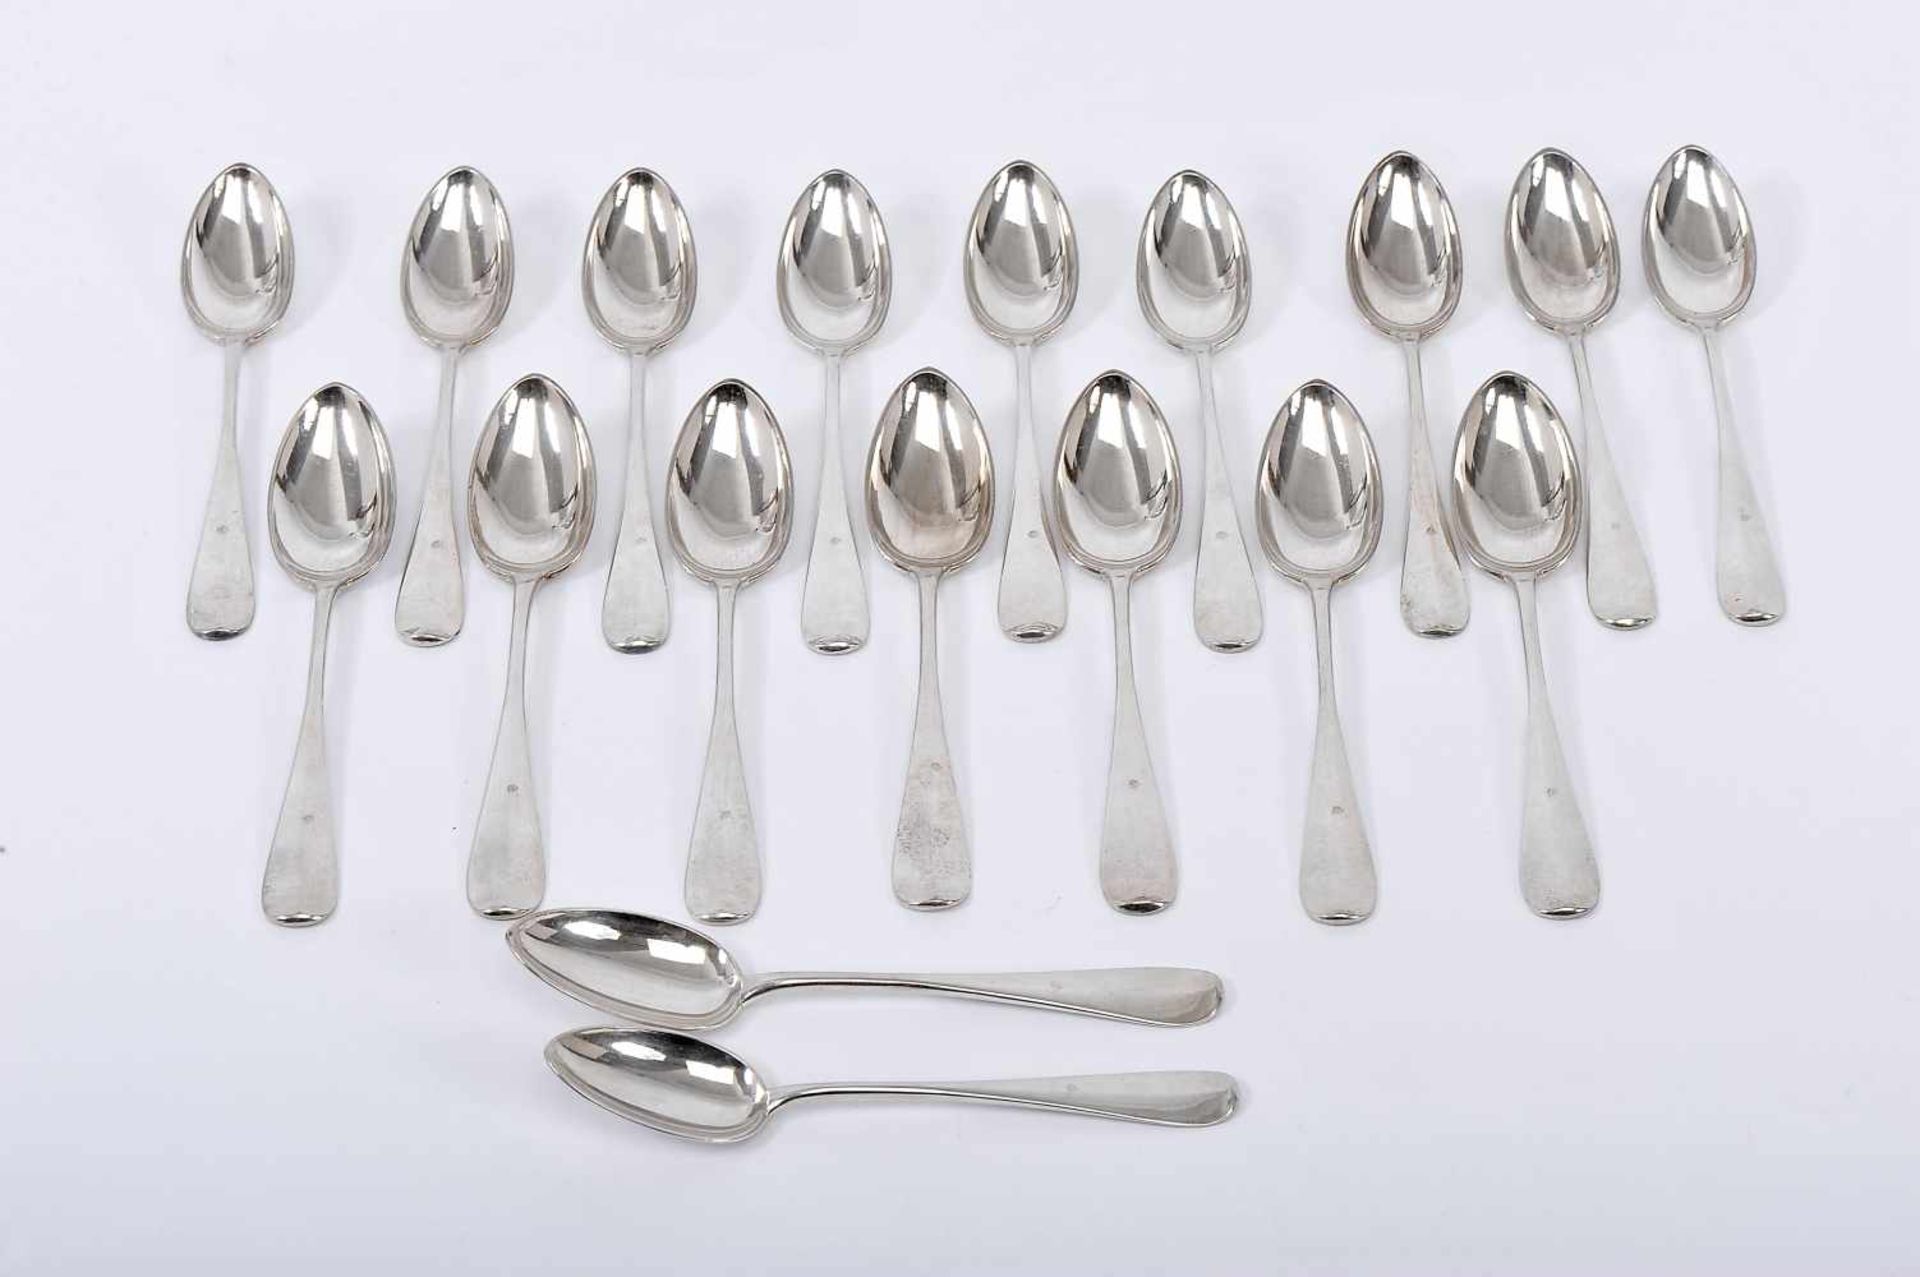 Eighteen tea spoons